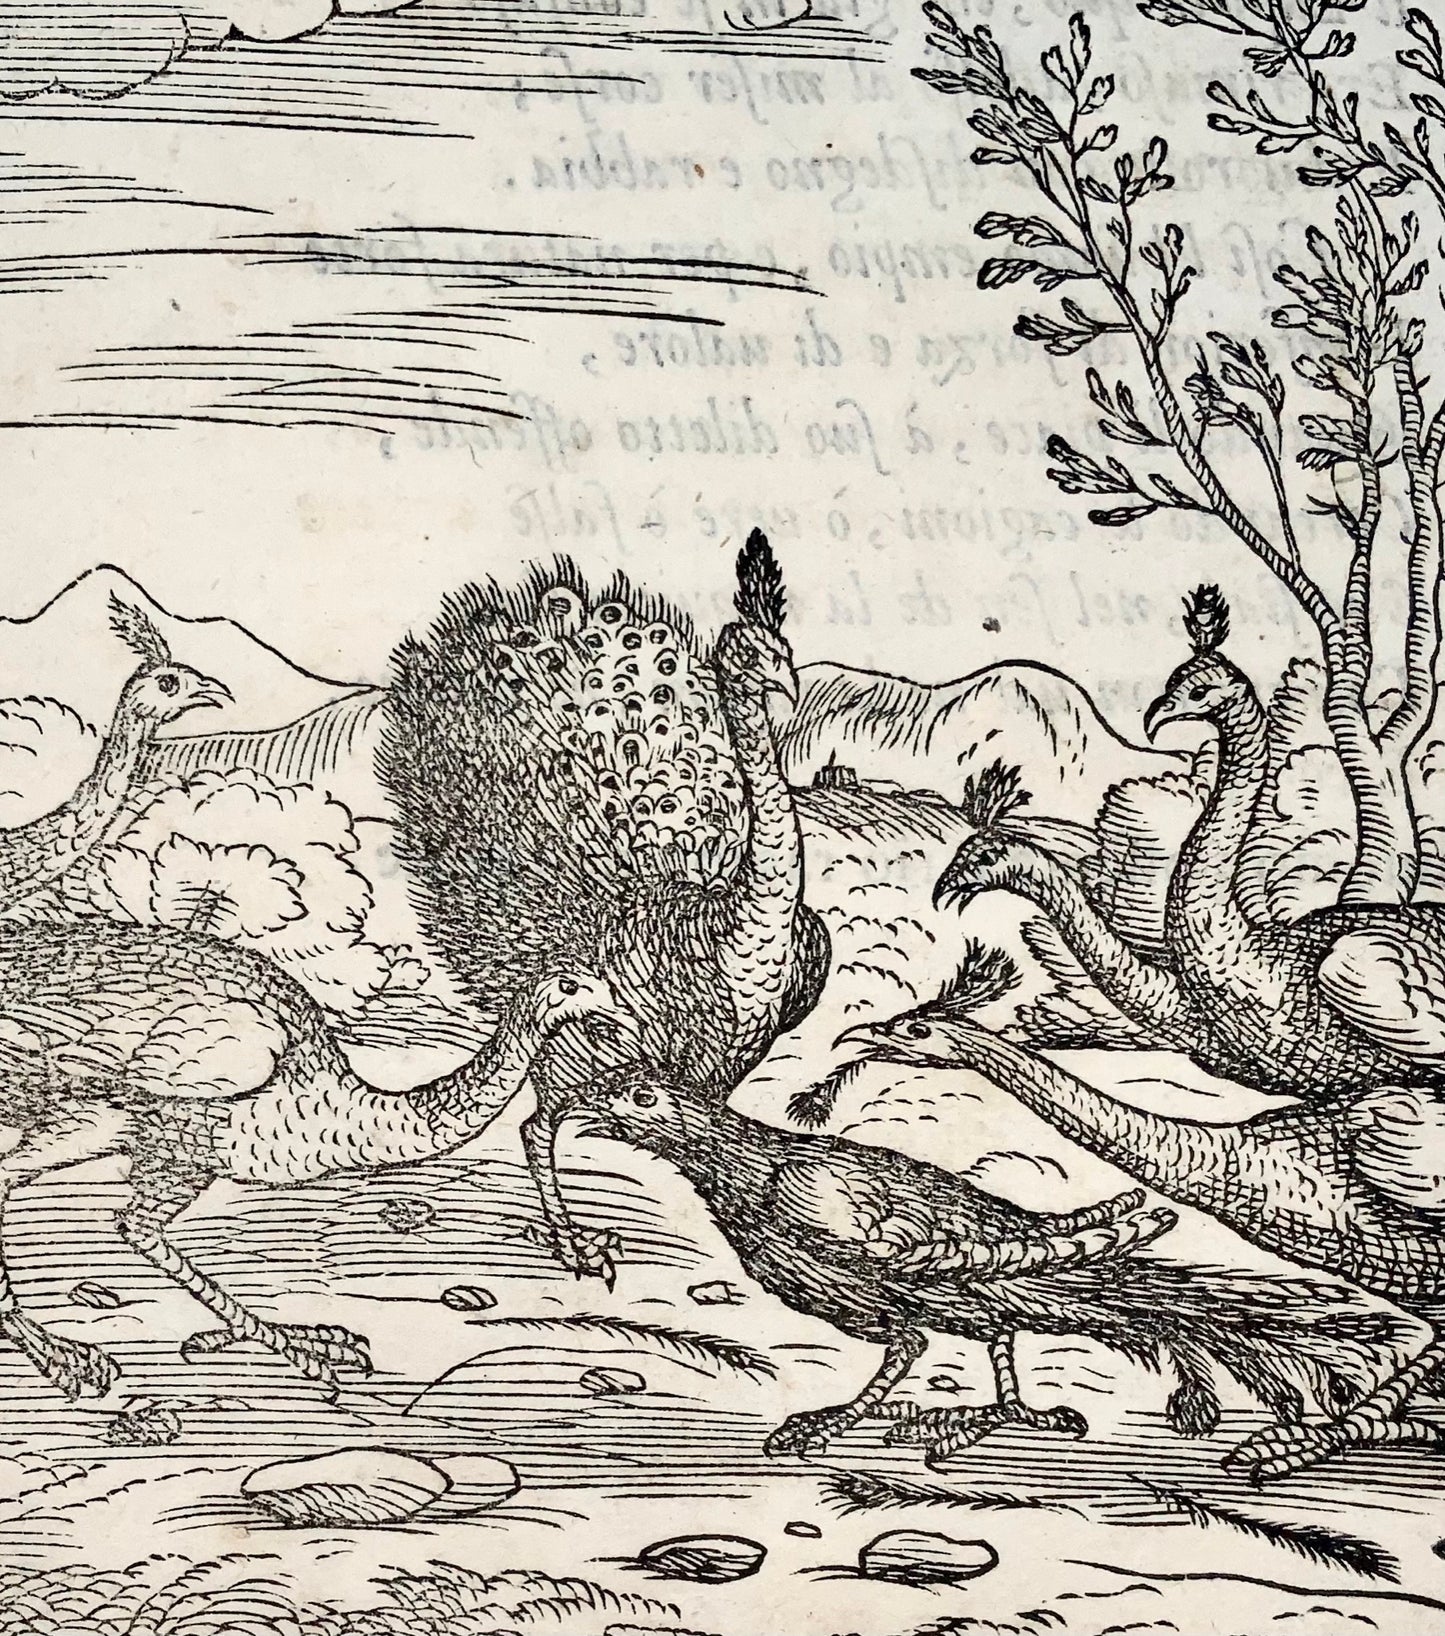 Gio. M. Verdizzotti (1525-1600) ; Les paons et le corbeau - feuille gravée sur bois 1570 - Fables